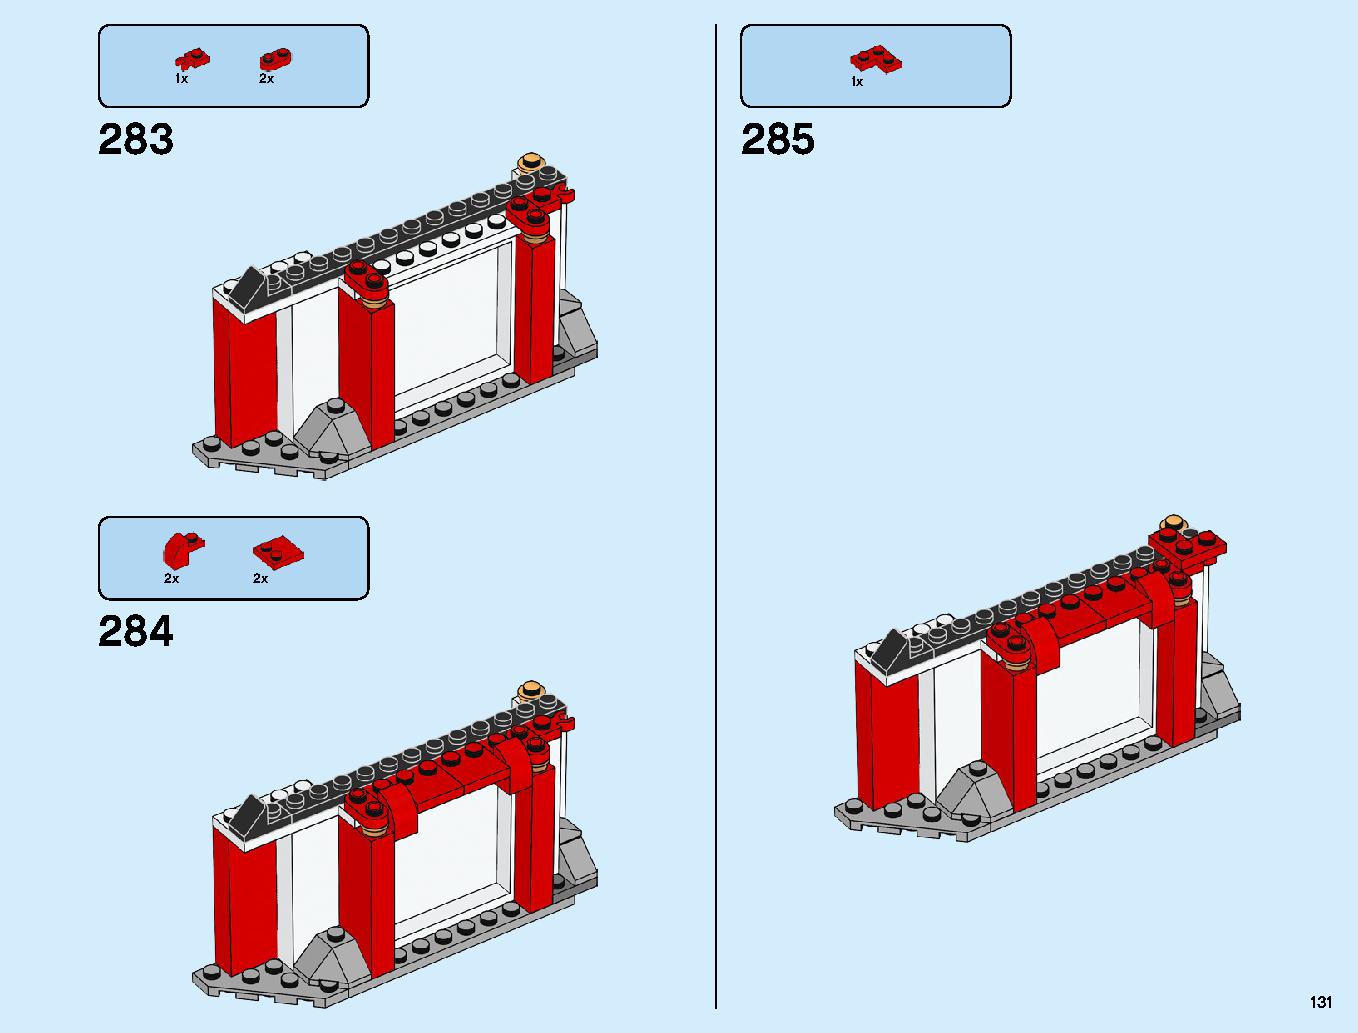 ニンジャ道場 70670 レゴの商品情報 レゴの説明書・組立方法 131 page